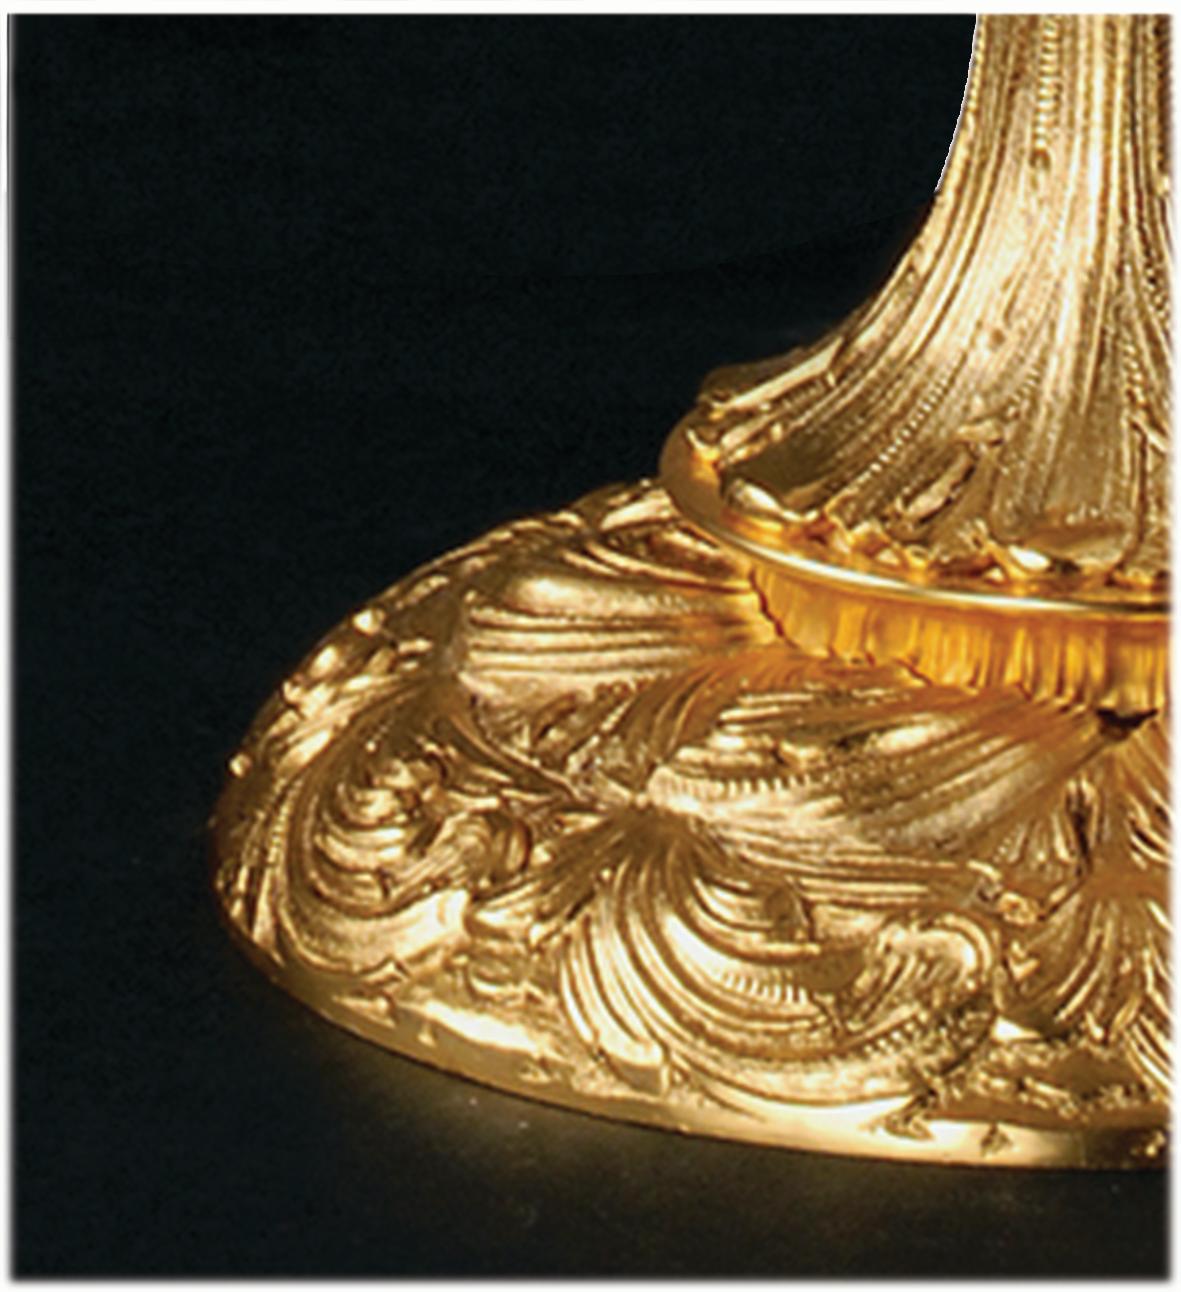 Tischleuchte mit 5 Lichtern aus handgeschliffenem Kristall und Bronze in patiniertem Gold.  Diese Kristall-Tischlampe ist ähnlich einem Kandelaber realisiert, nur dass statt der Kerze die Glühbirne-Lampe hat. Jedes Objekt ist handgefertigt, und die